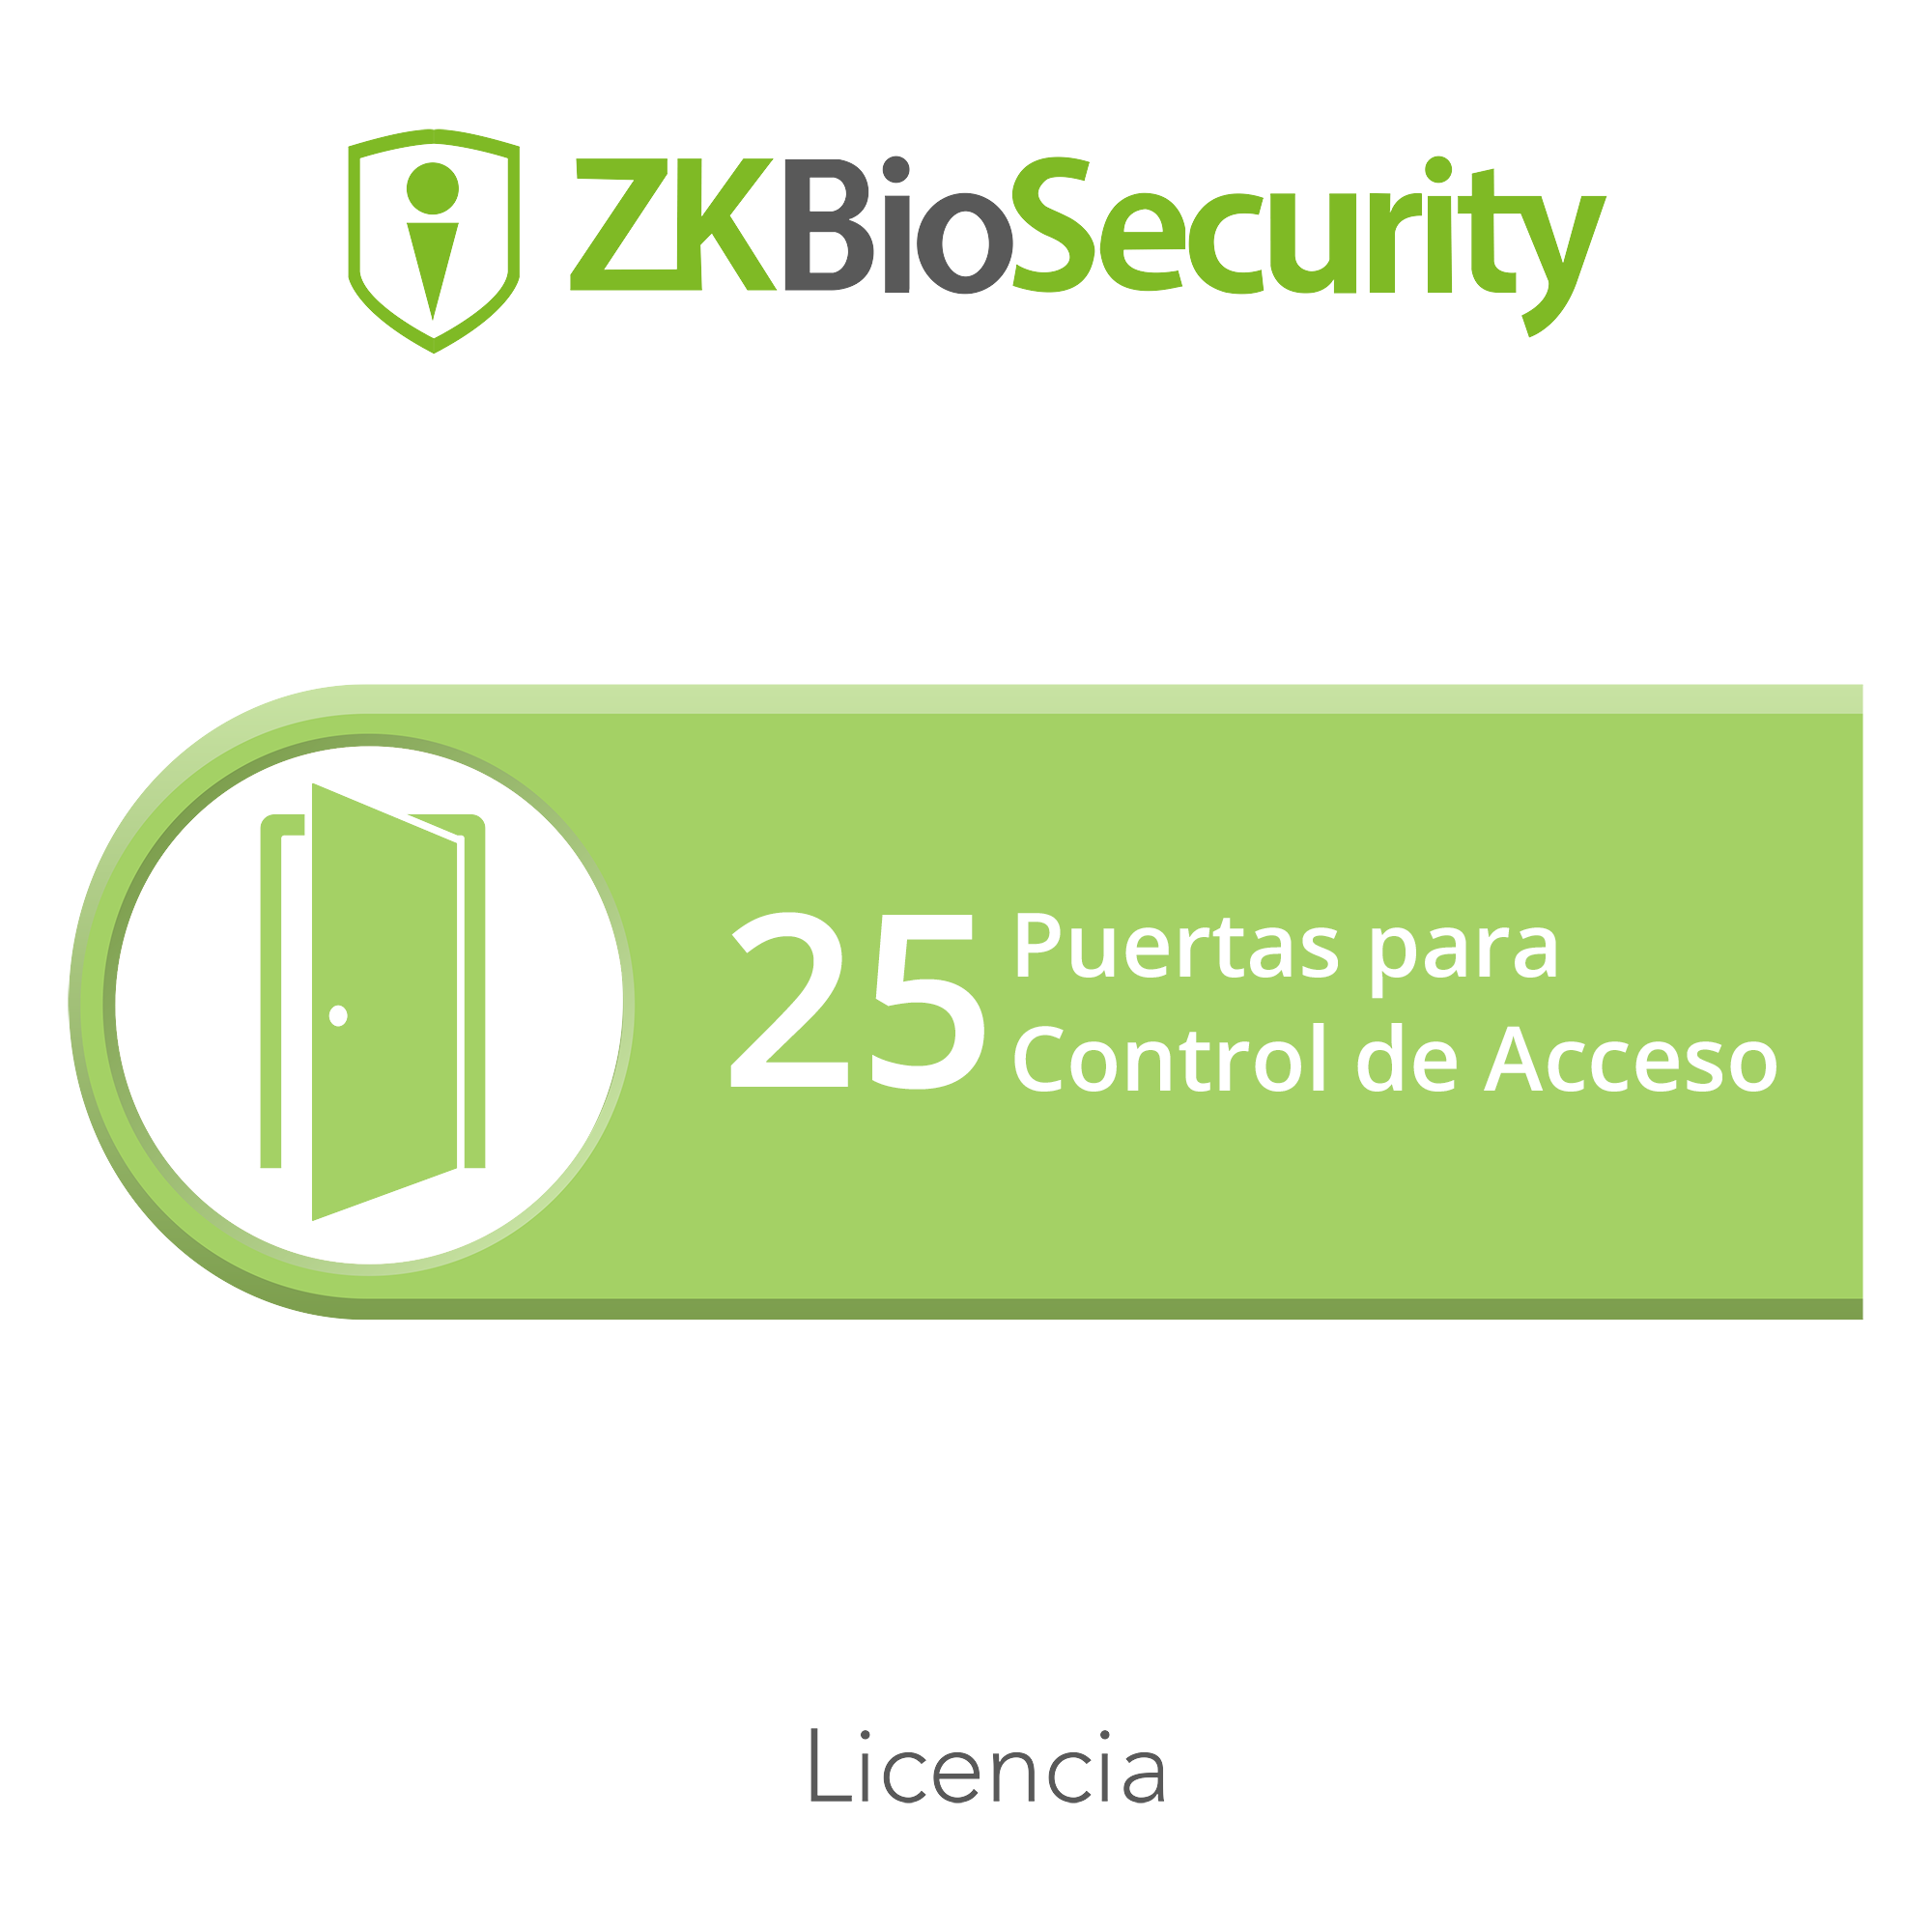 Licencia para ZKBiosecurity permite gestionar hasta 25 puertas para control de acceso